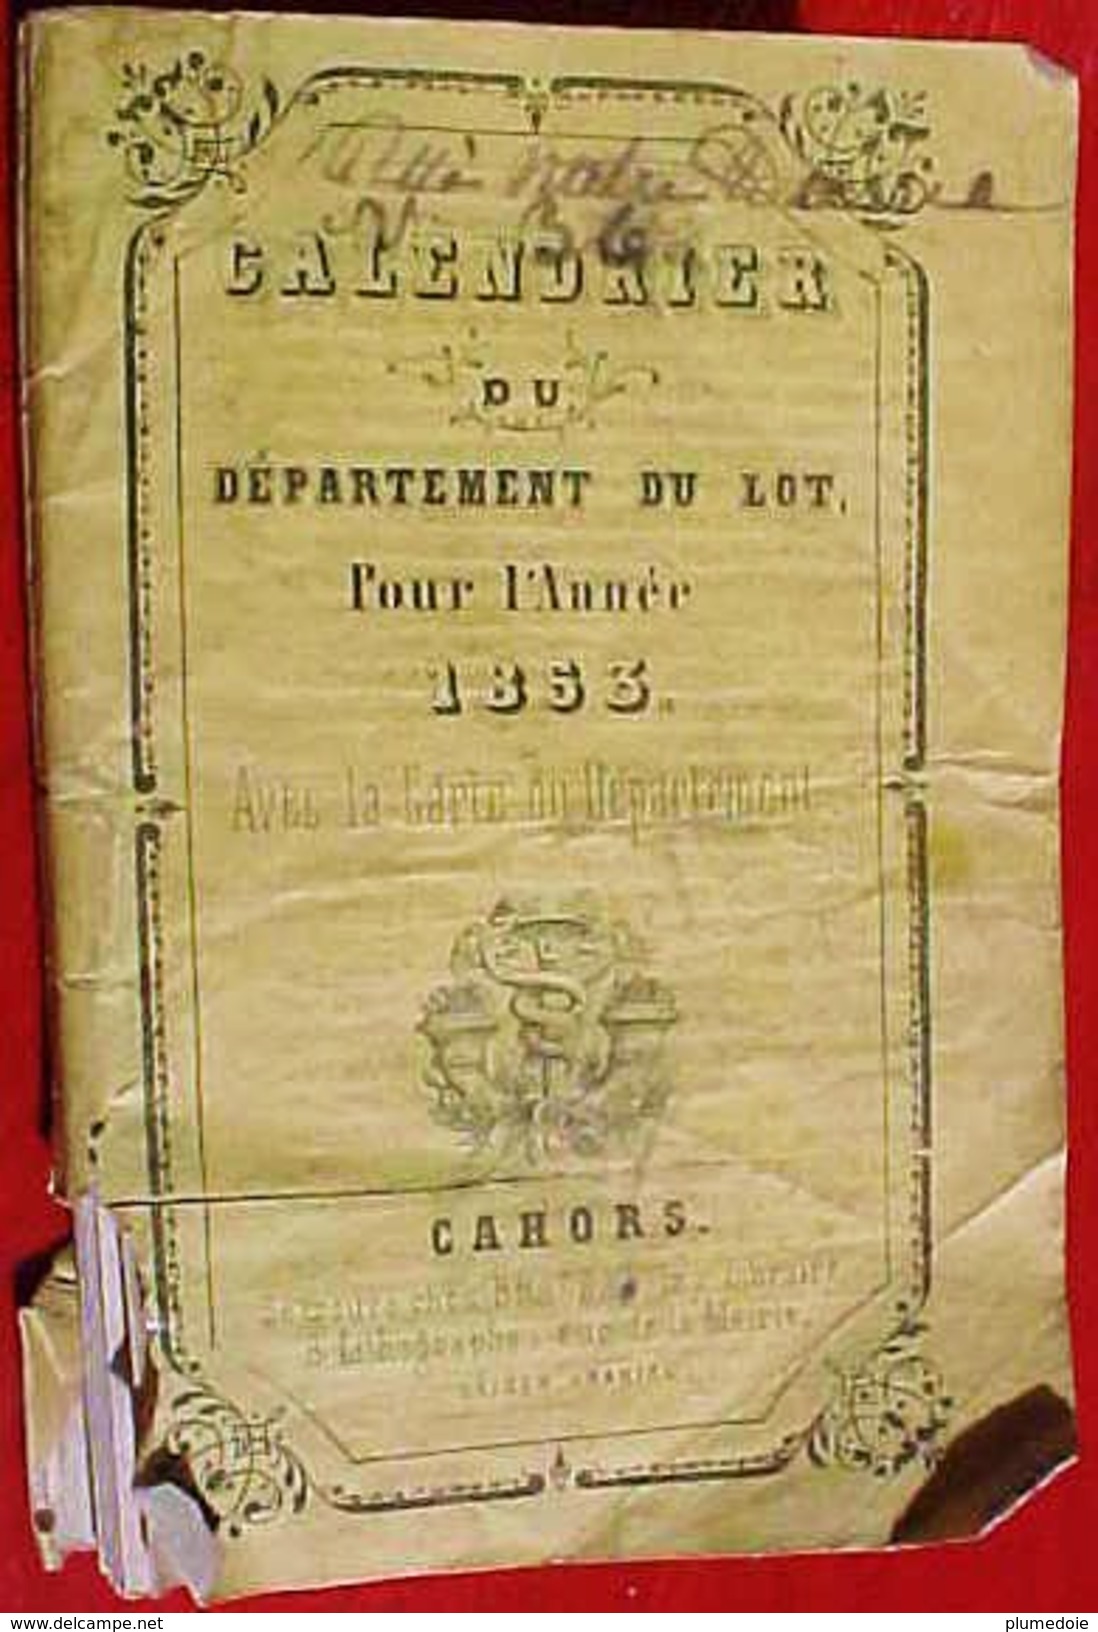 EO 1853, CALENDRIER du DEPARTEMENT du LOT avec CARTE DEPLIABLE  par BRASSAC à CAHORS OLD CALENDAR BOOKLET